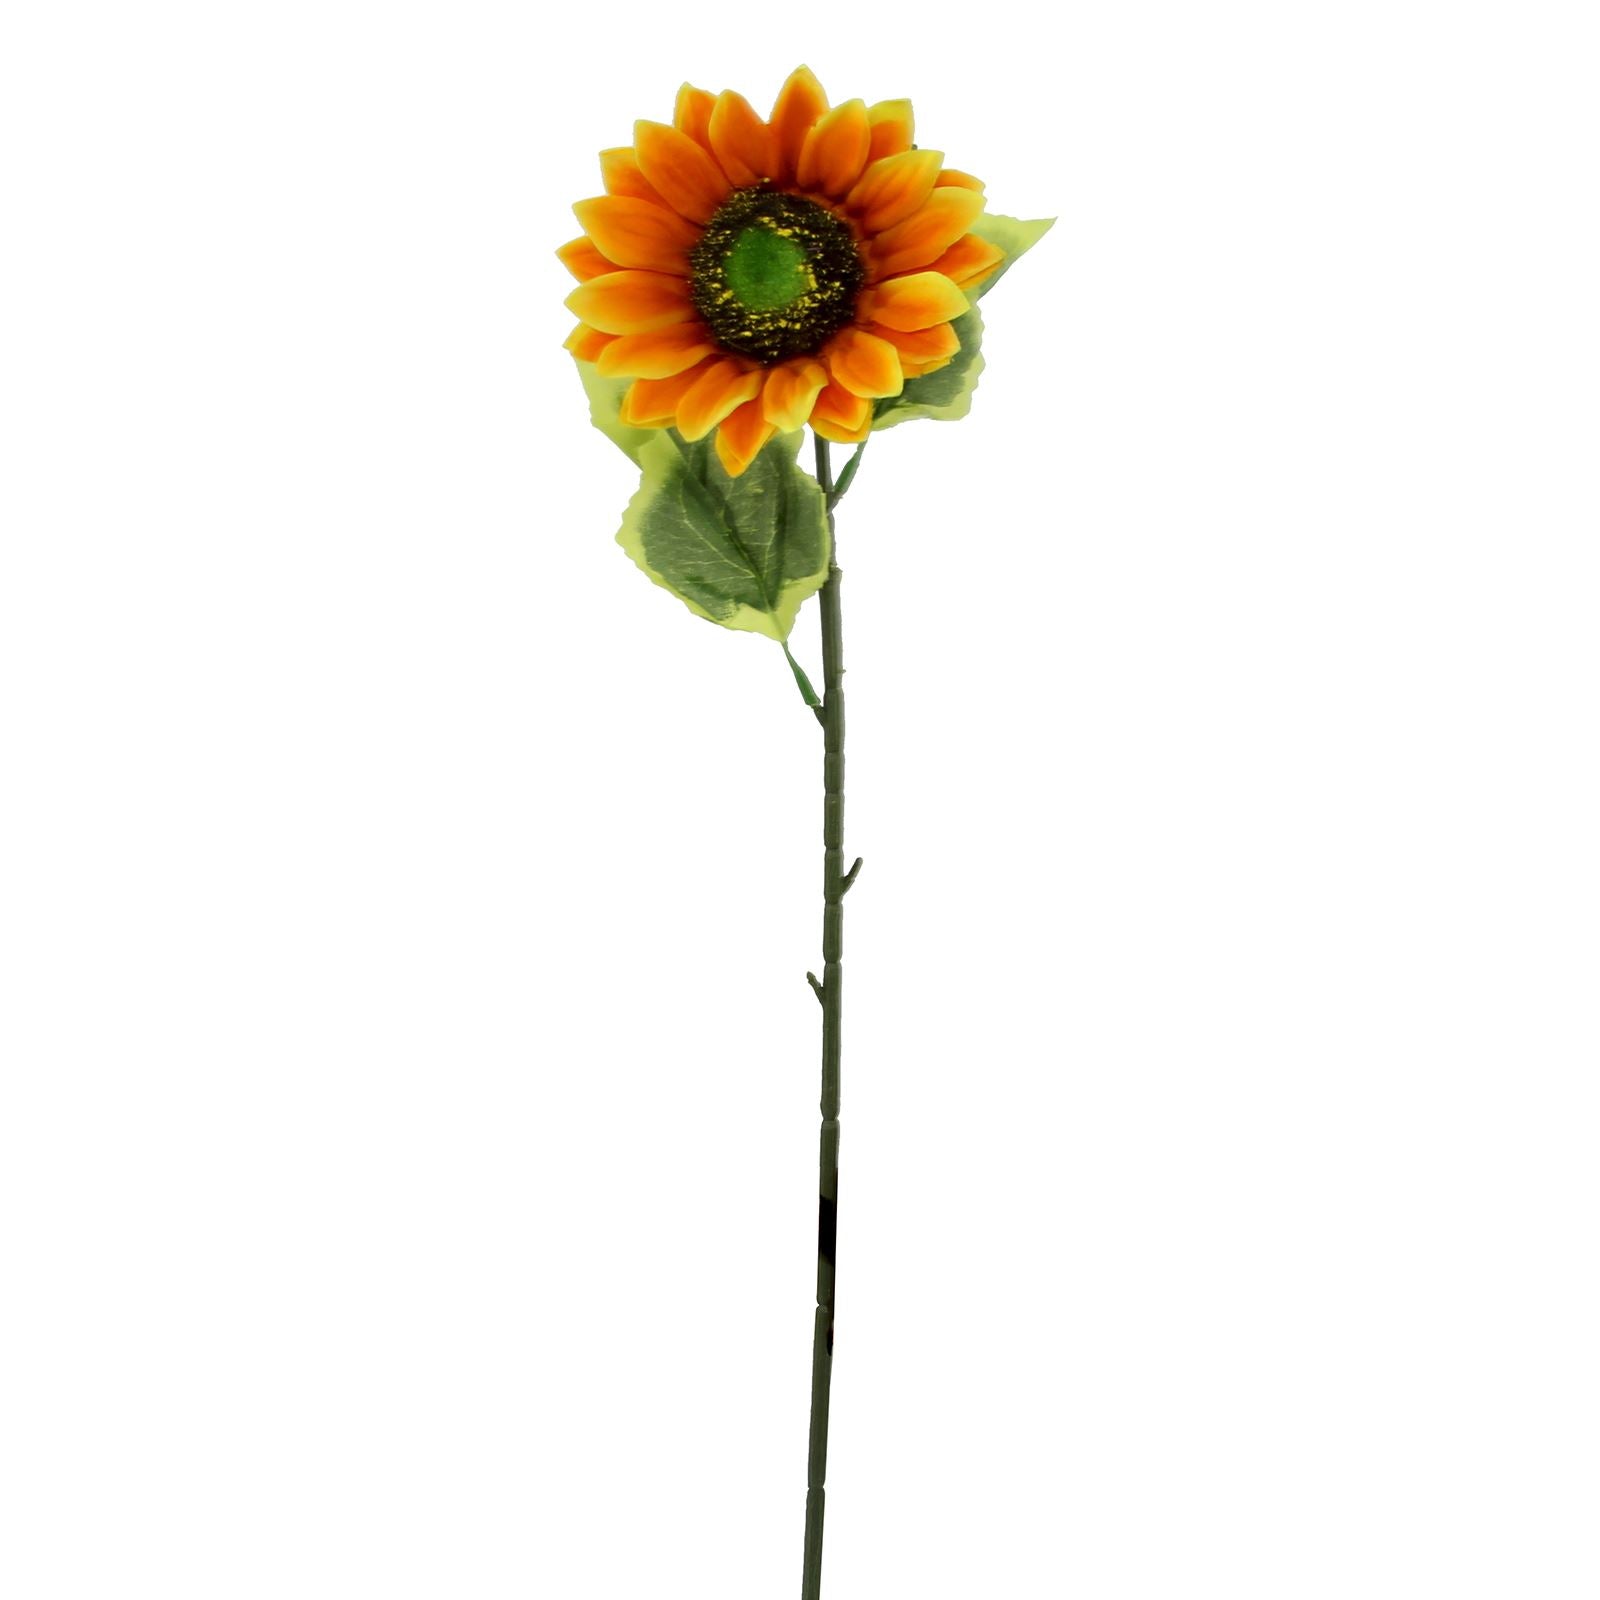 10x 14cm Premium Single Orange Sunflower